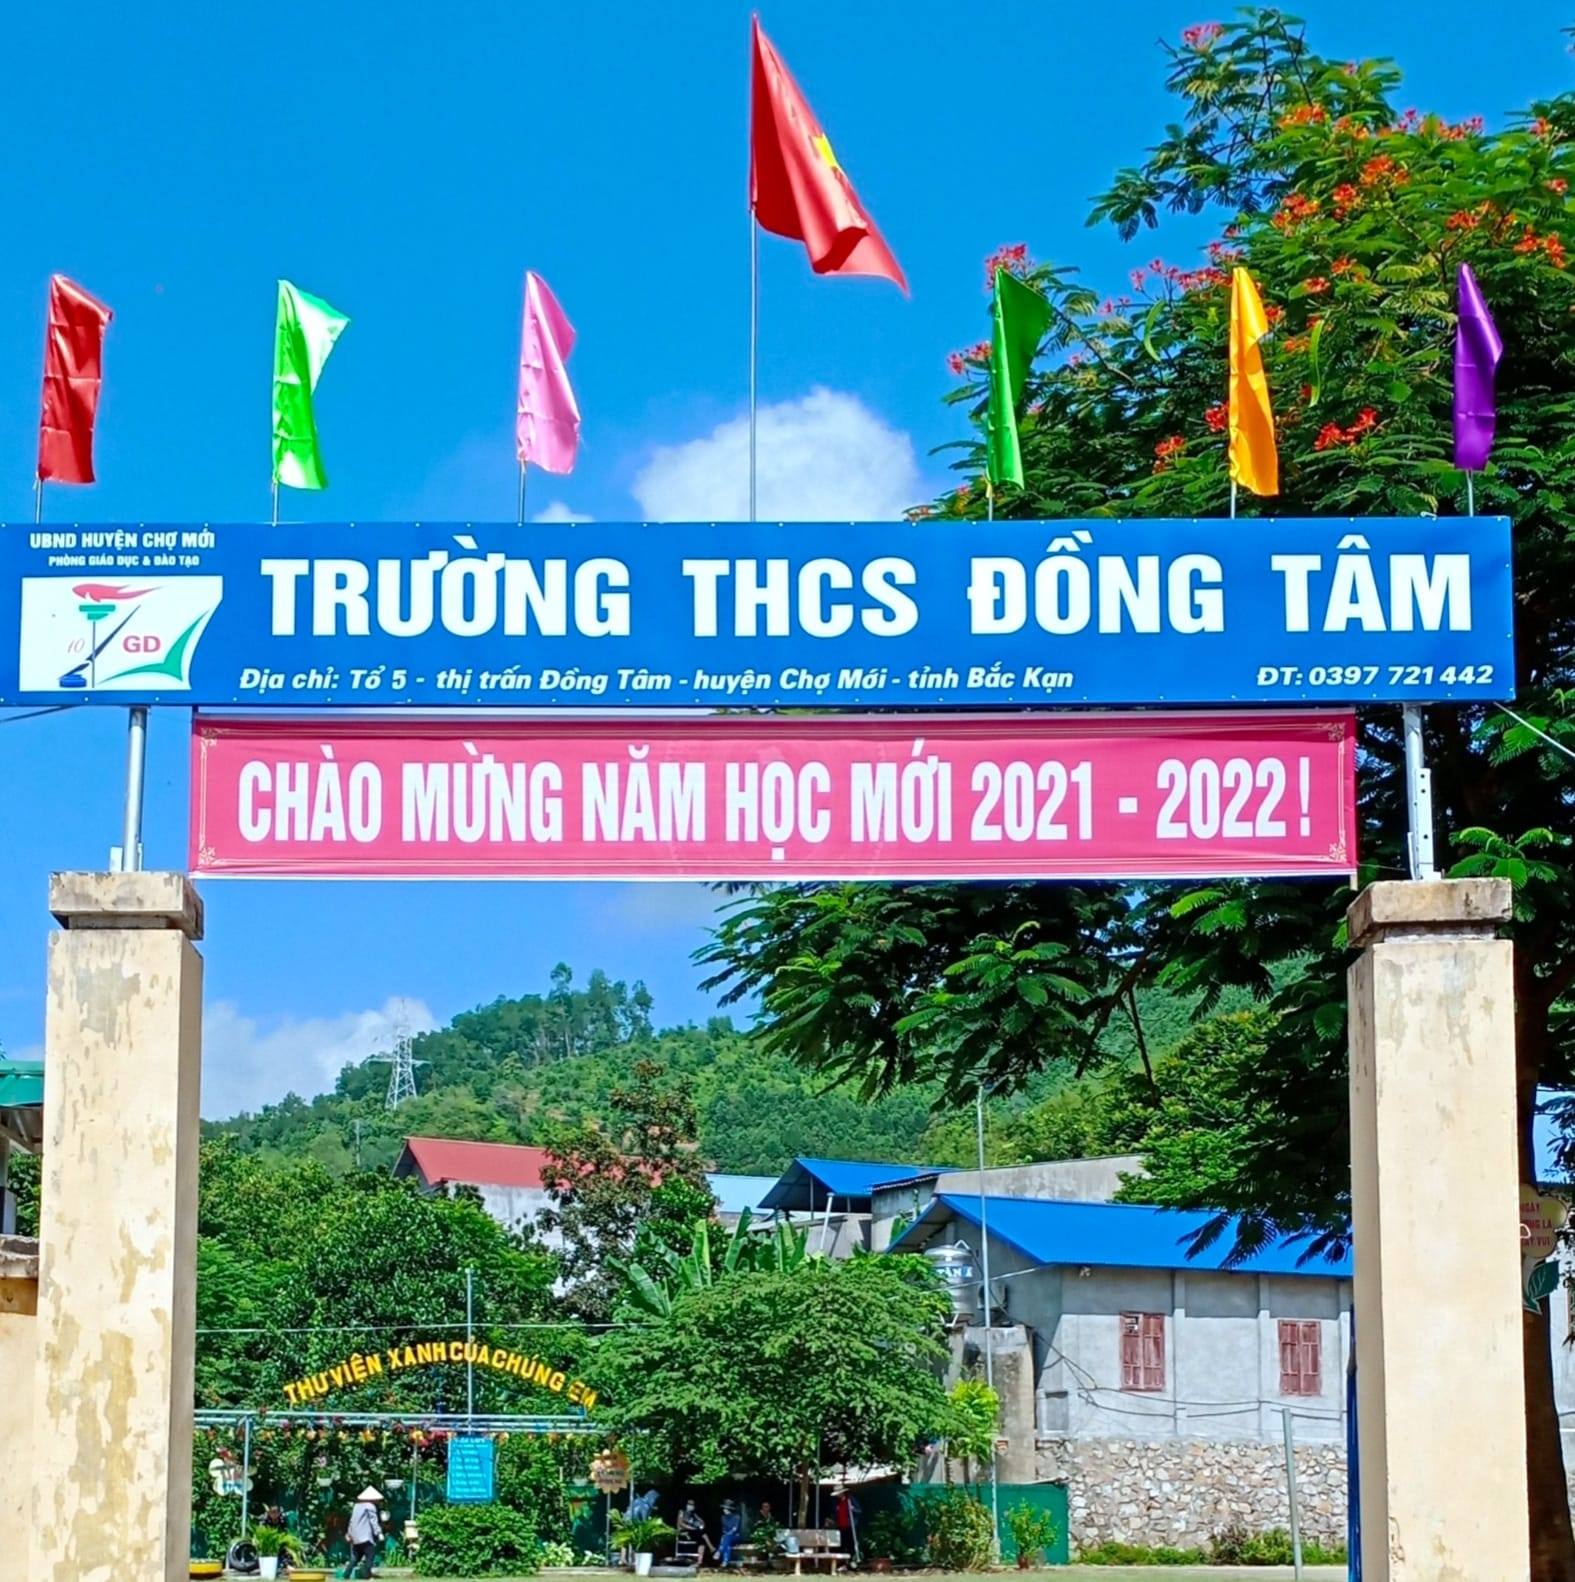 Trường THCS Đồng Tâm ảnh 1